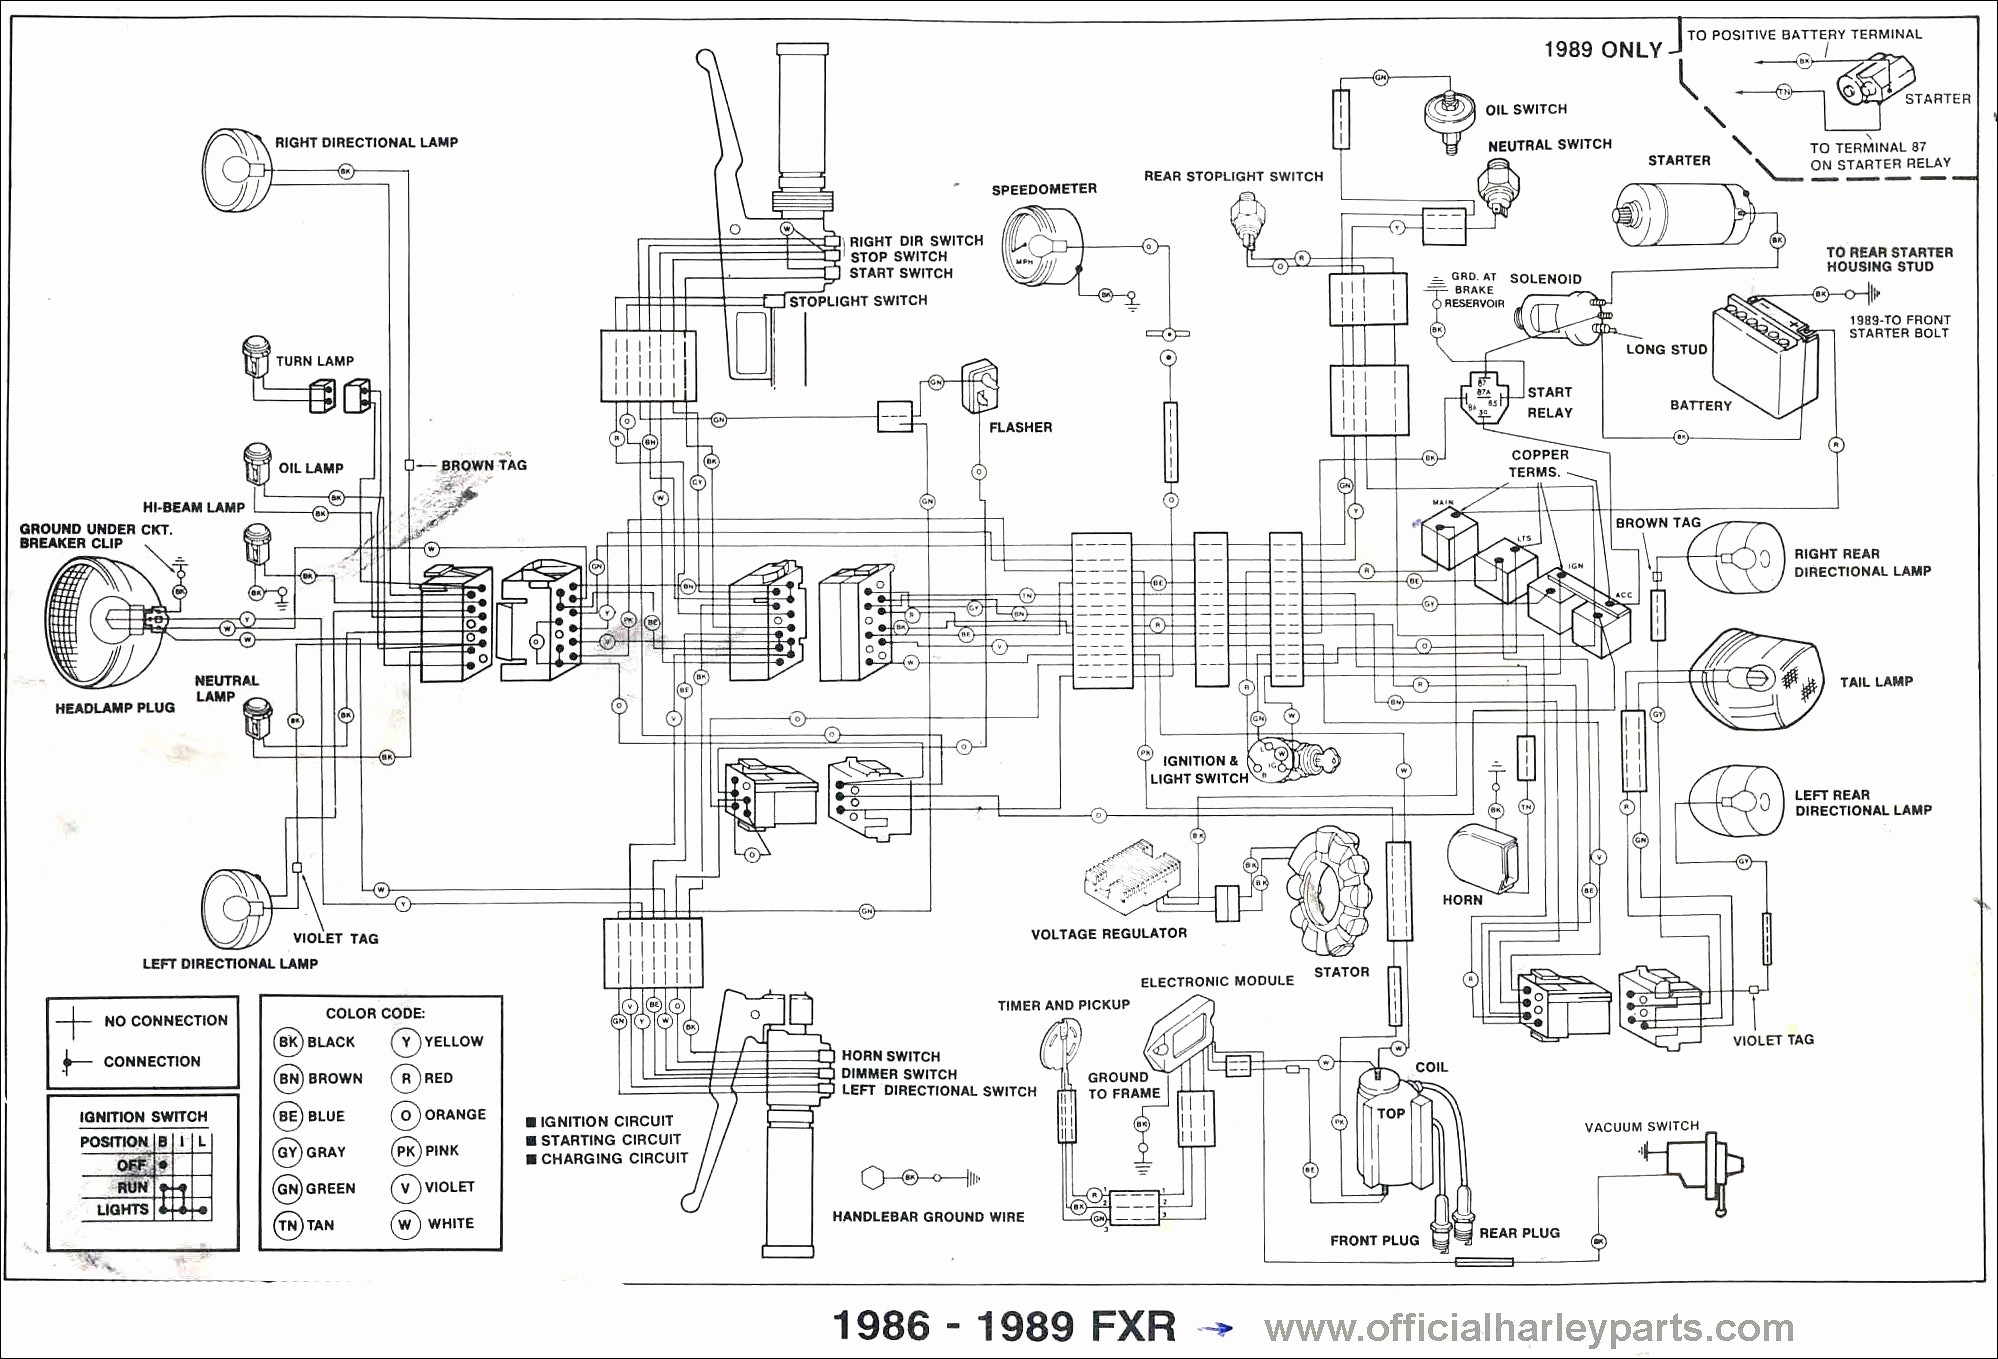 harley davidson wiring diagram best of klr 650 wiring diagram wiring rh crissnetonline